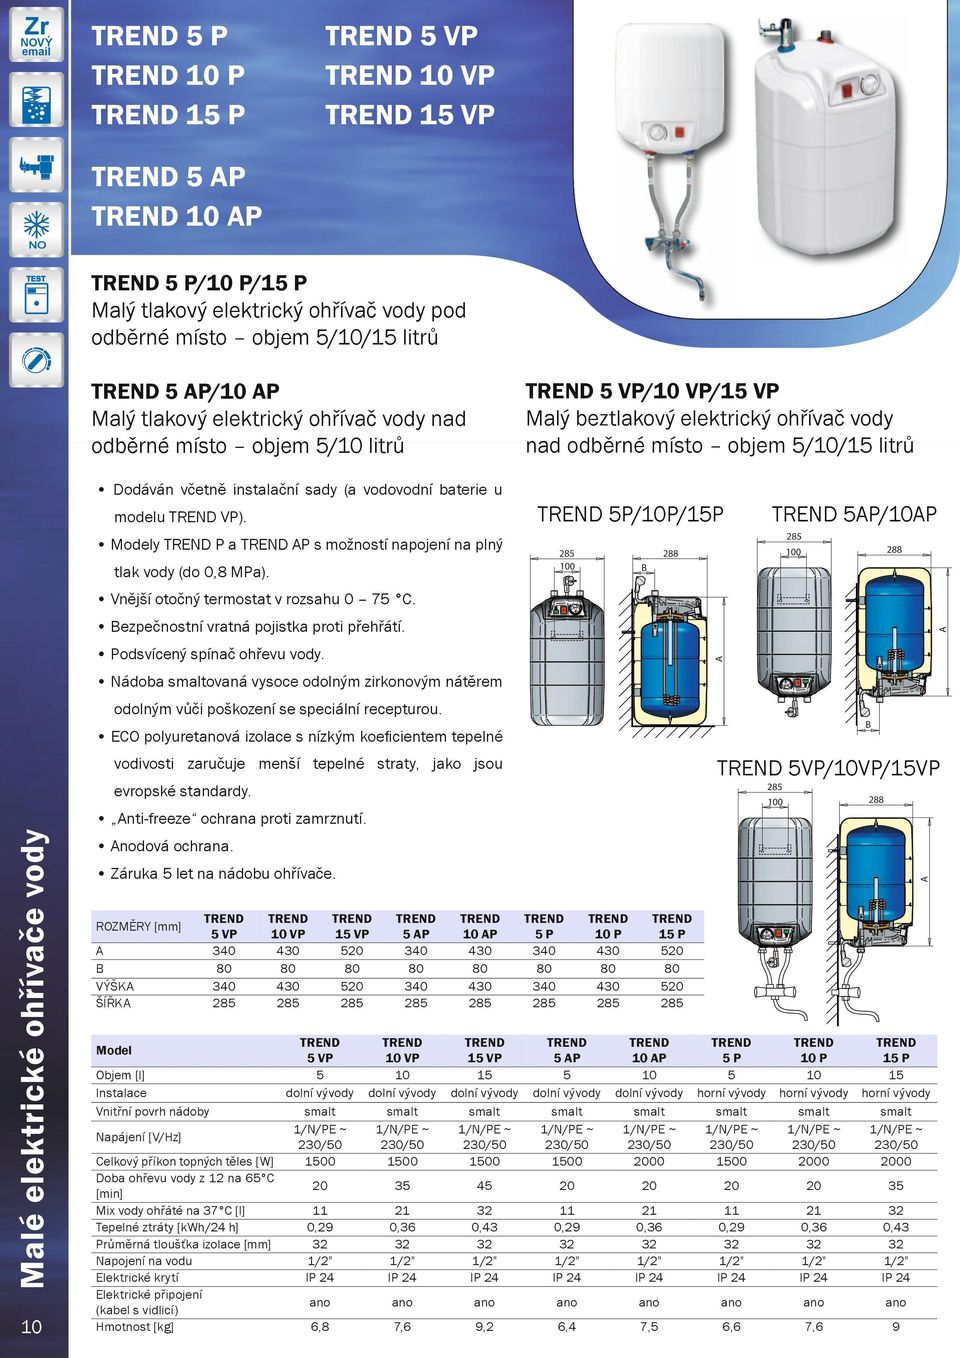 P/0P y P a P s možností napojení na plný 00 00 tlak vody (do 0, MPa). 00 00 00 00 Podsvícený spínač ohřevu vody. ezpečnostní vratná pojistka proti přehřátí. Vnější otočný termostat v rozsahu 0 7.